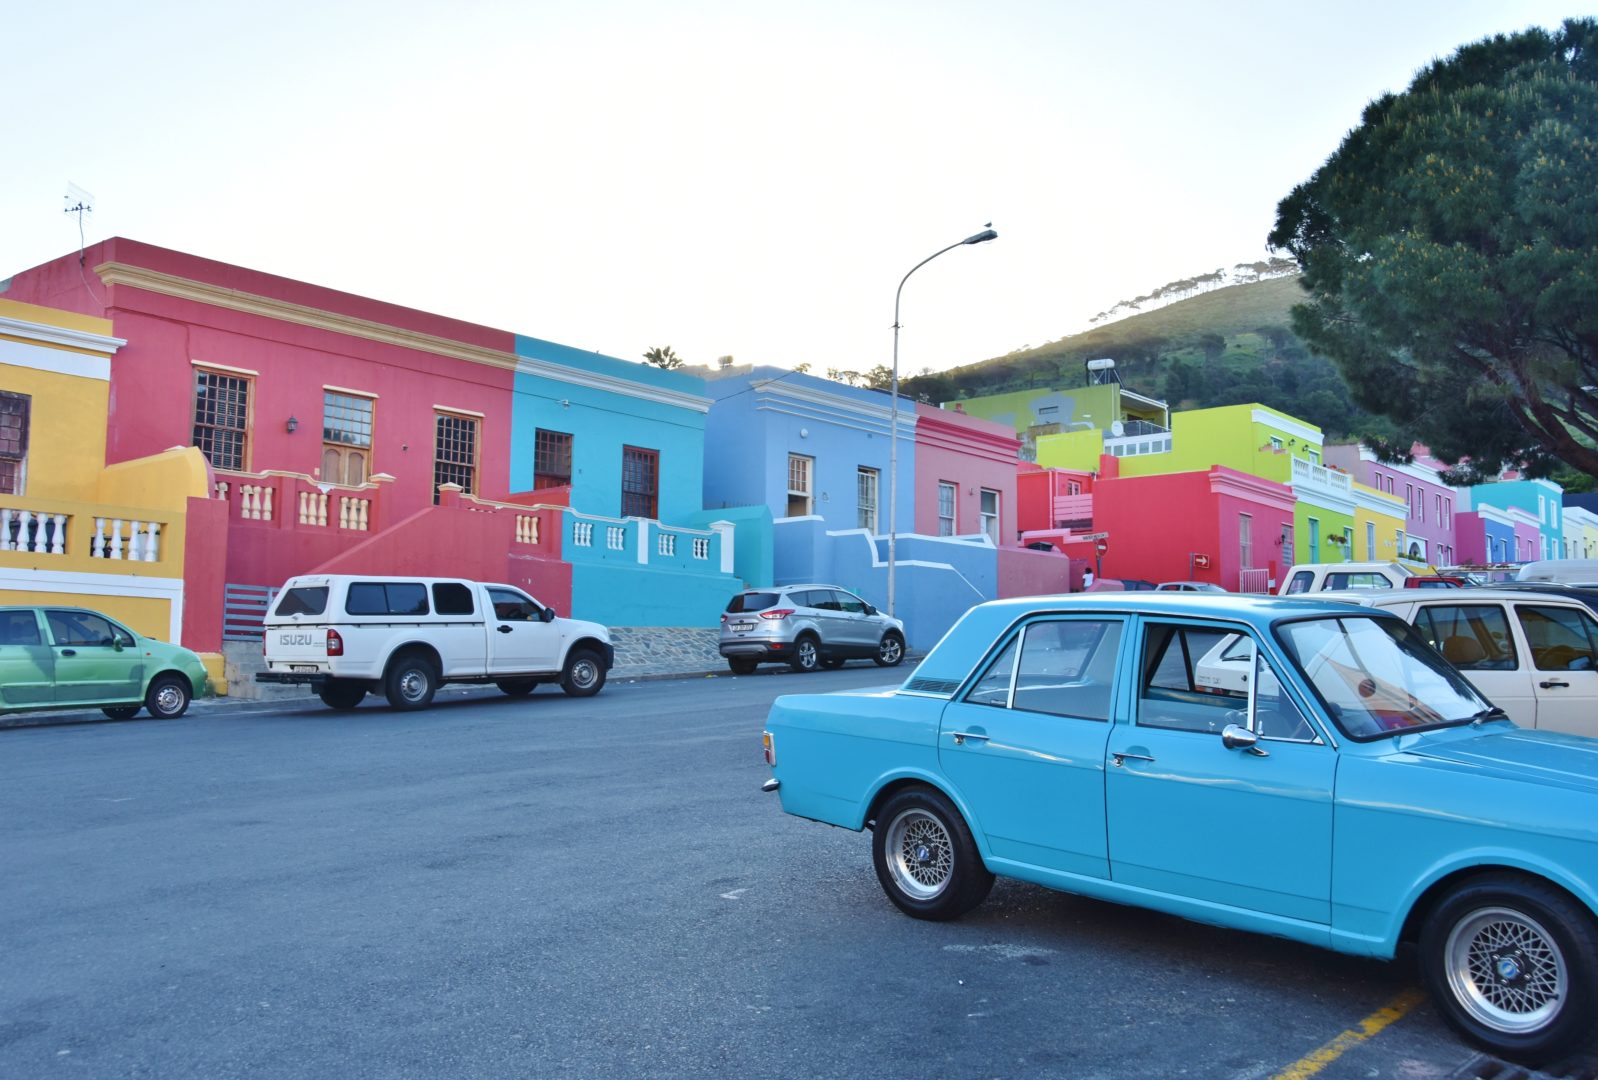 4 giorni tra Cape Town e dintorni: cosa vedere